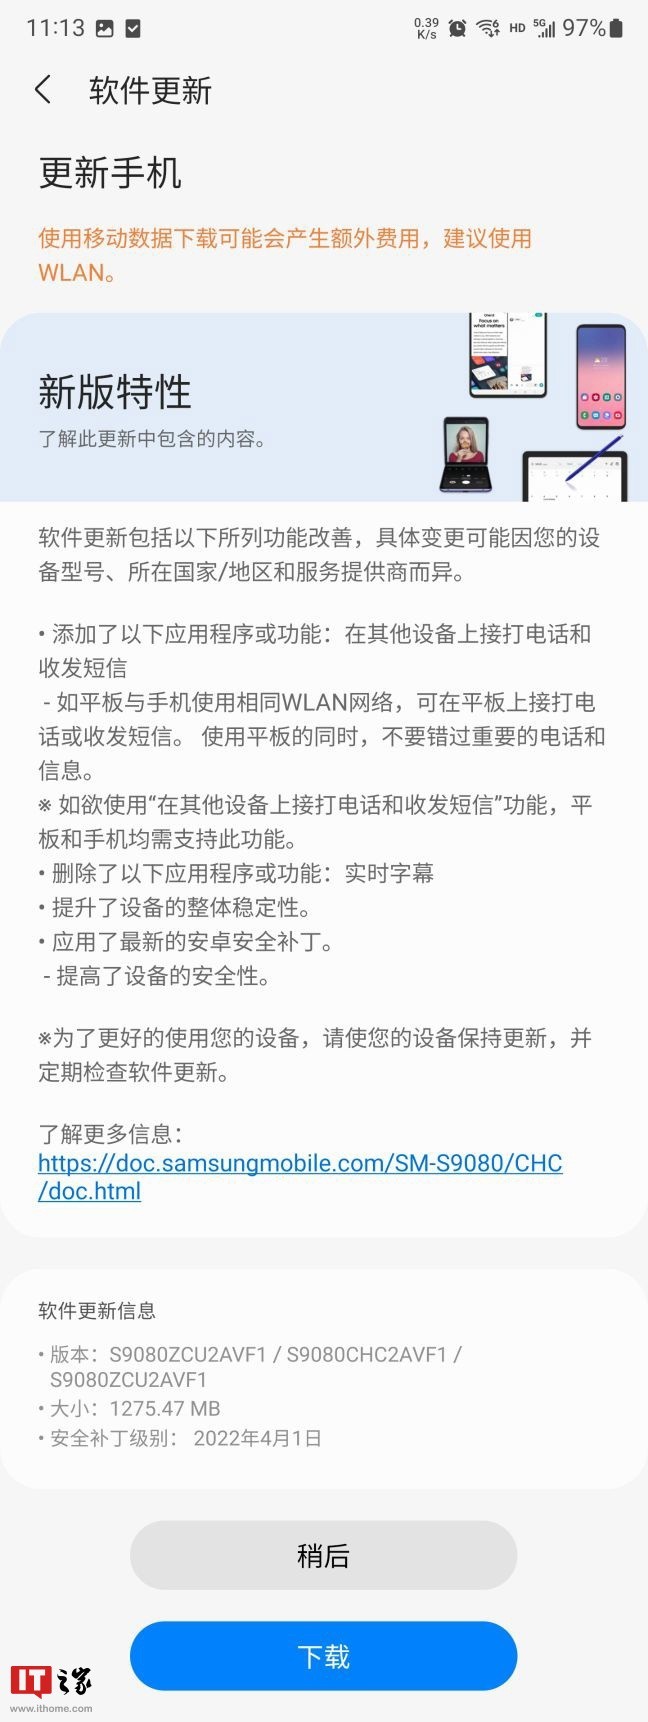 三星手机系统更新被指偷懒，仅在韩国、中国市场列出详细更新日志